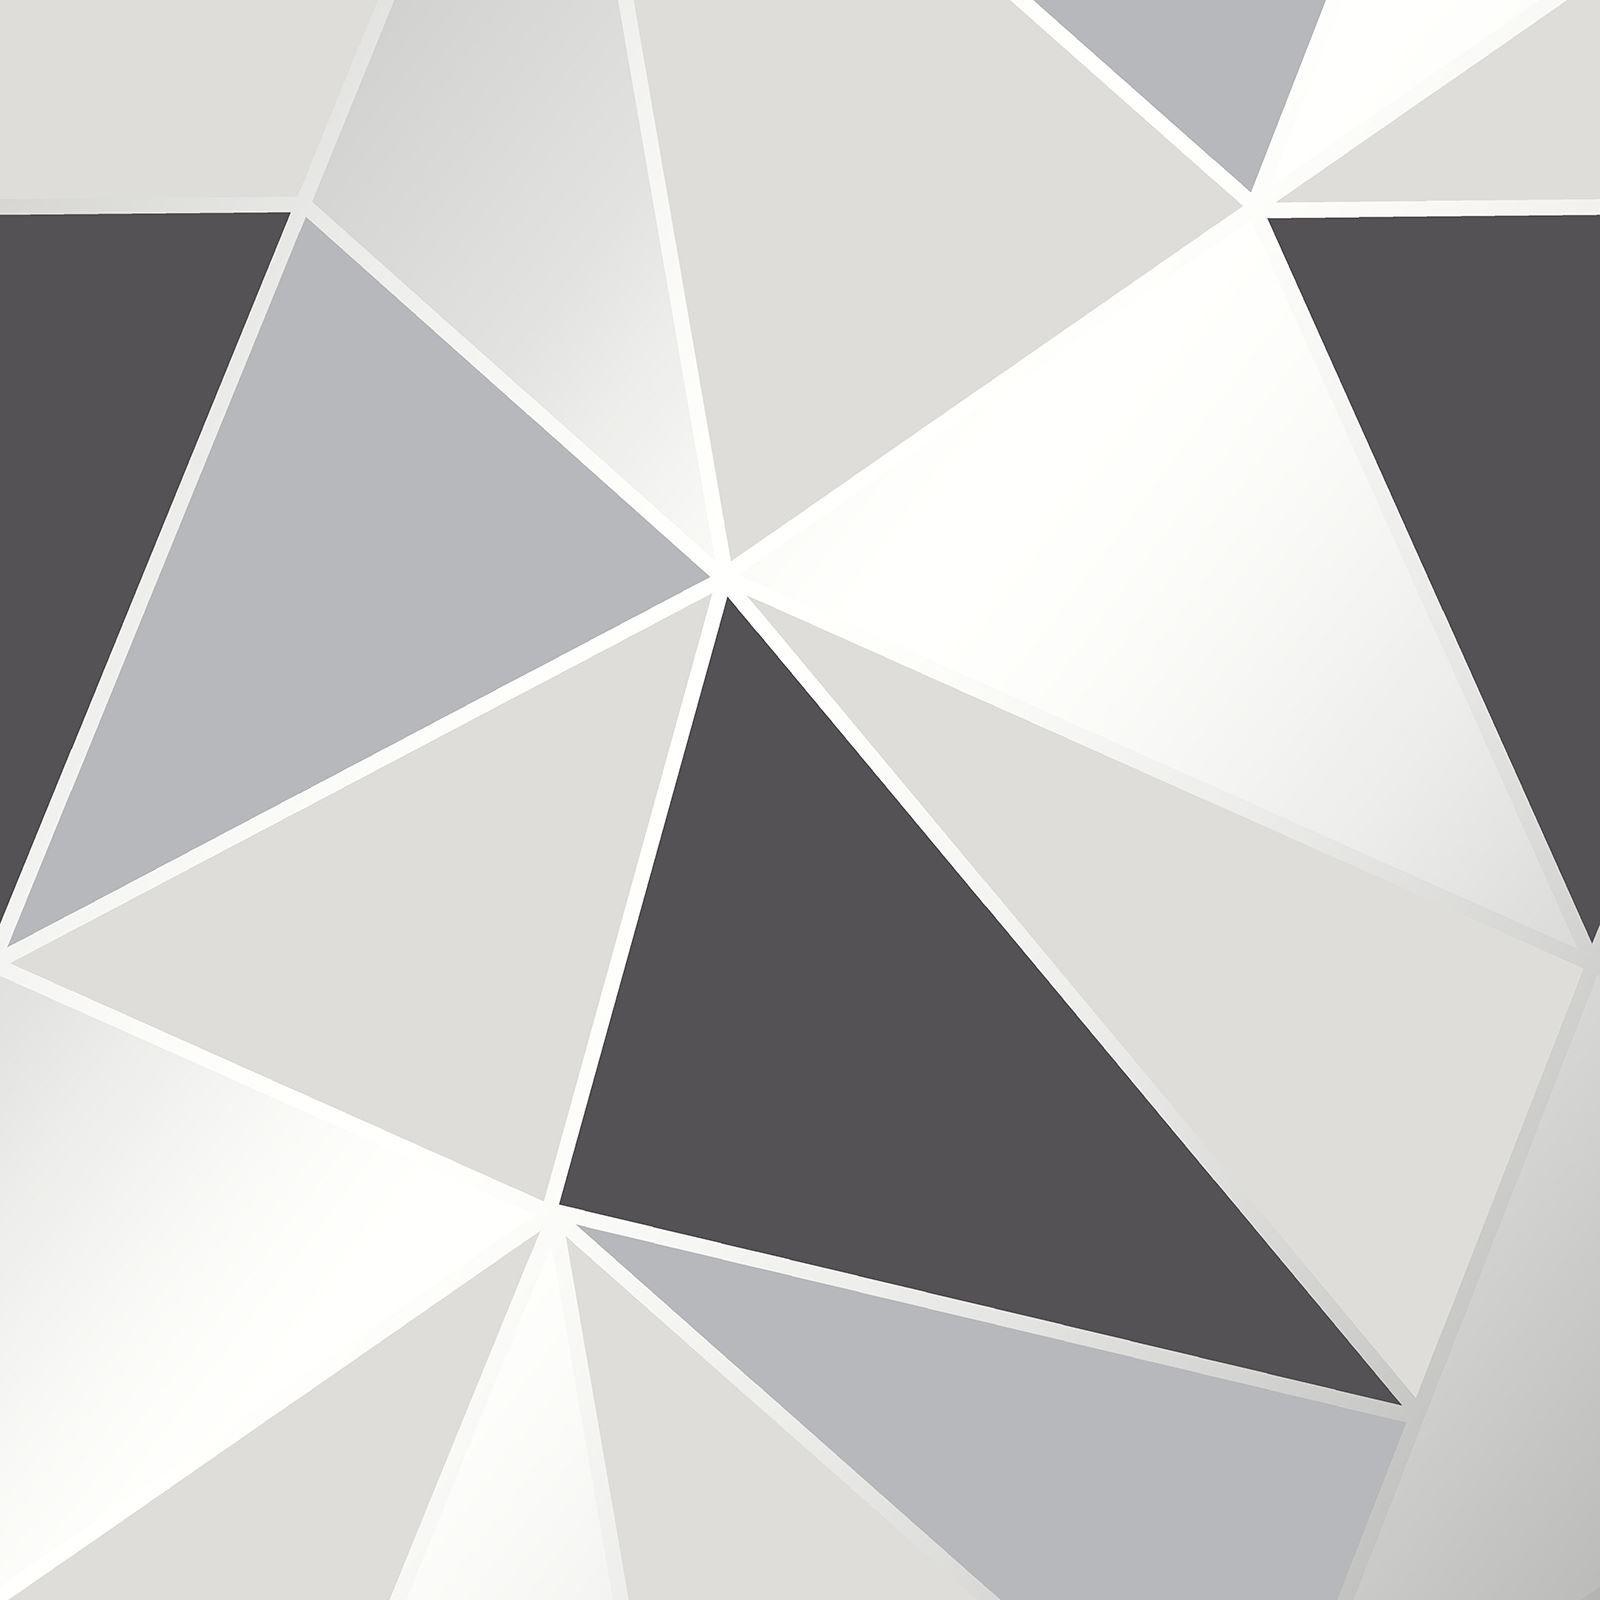 40 Wallpaper with Gray Geometric Designs  WallpaperSafari